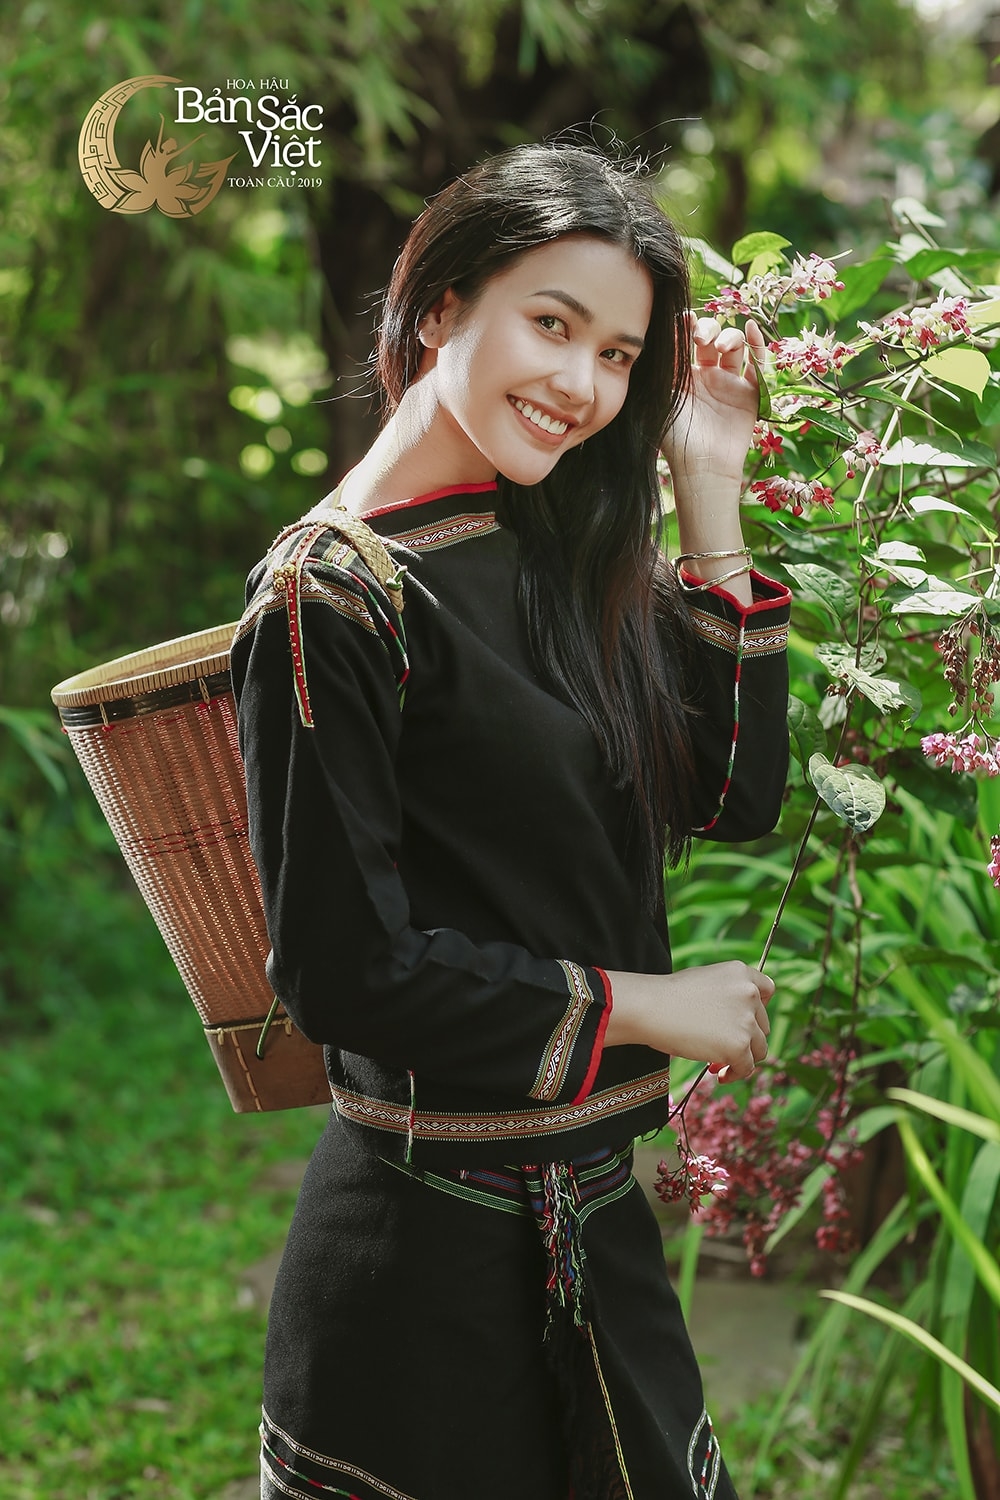  
Hình ảnh của Bella trong Hoa hậu Bản săc Việt Toàn cầu.